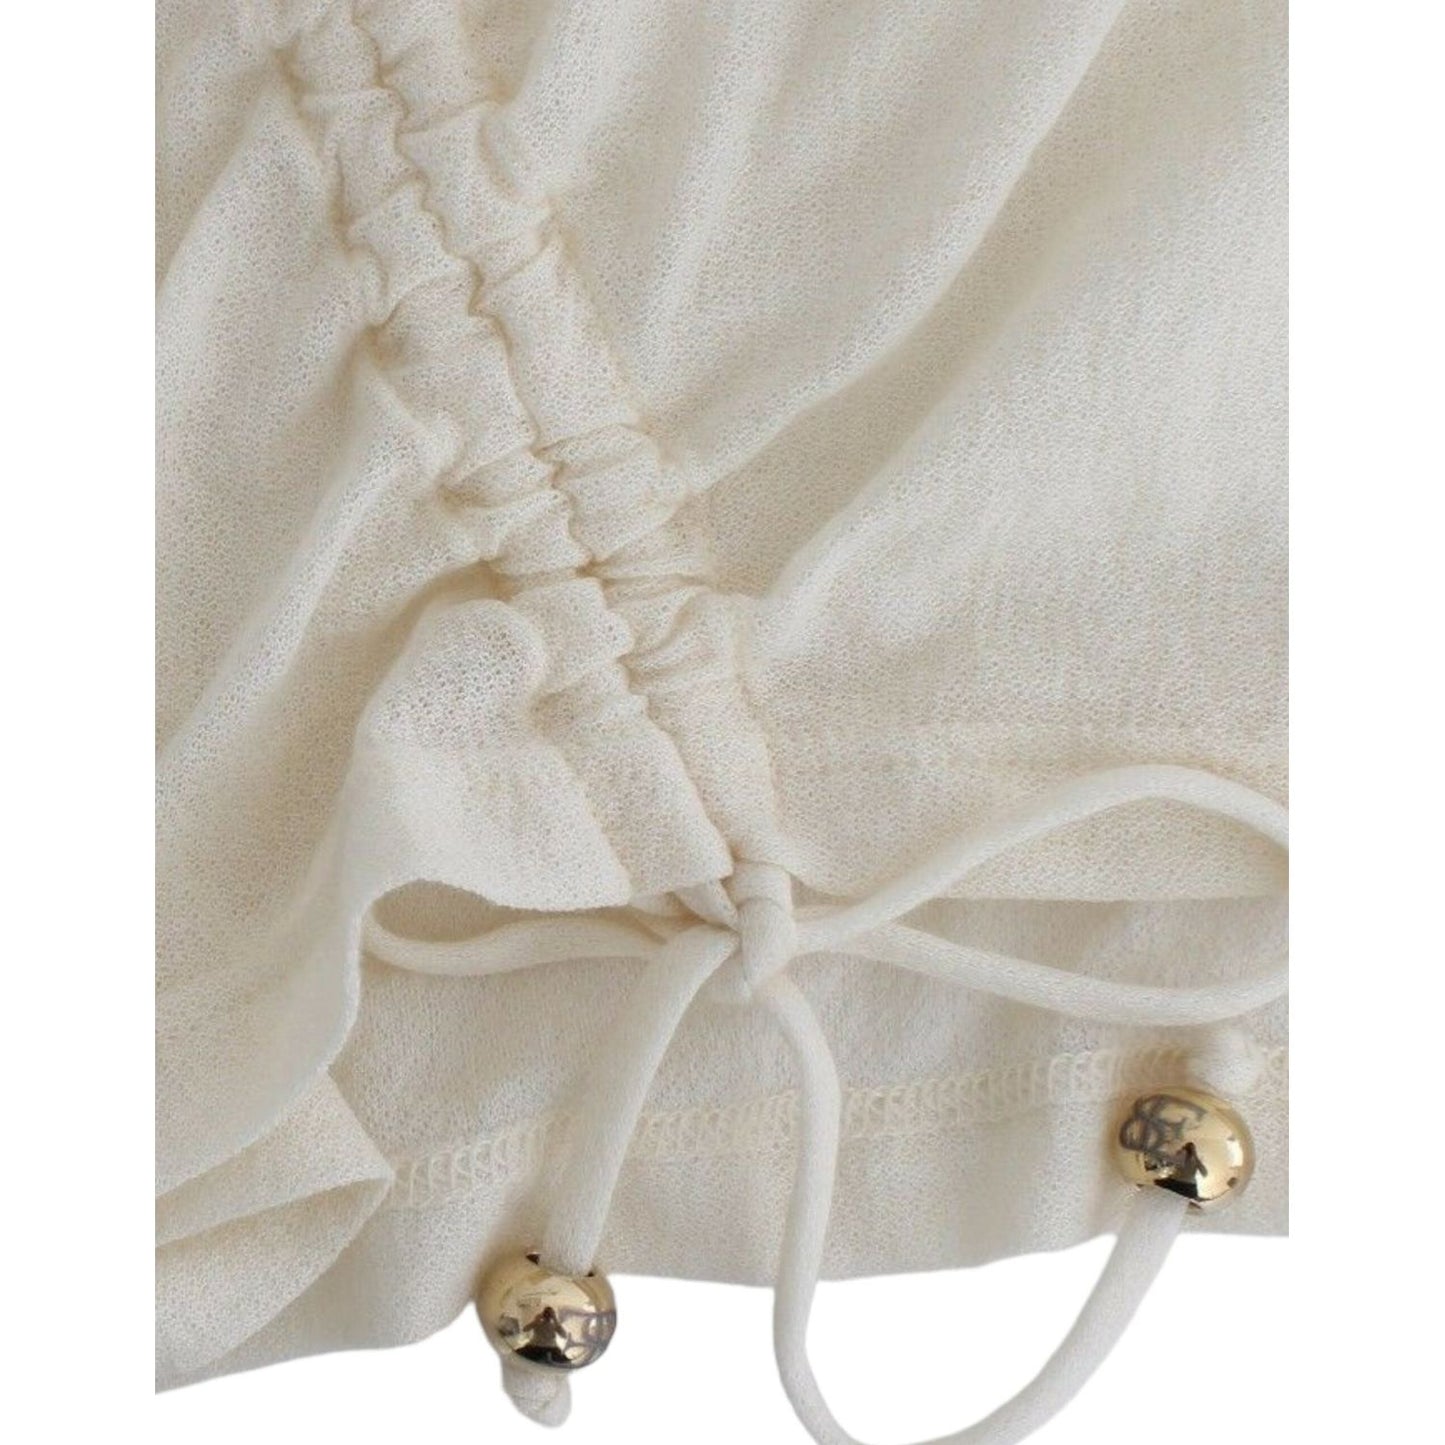 Ermanno ScervinoElegant White Cotton Short Sleeve BlouseMcRichard Designer Brands£109.00